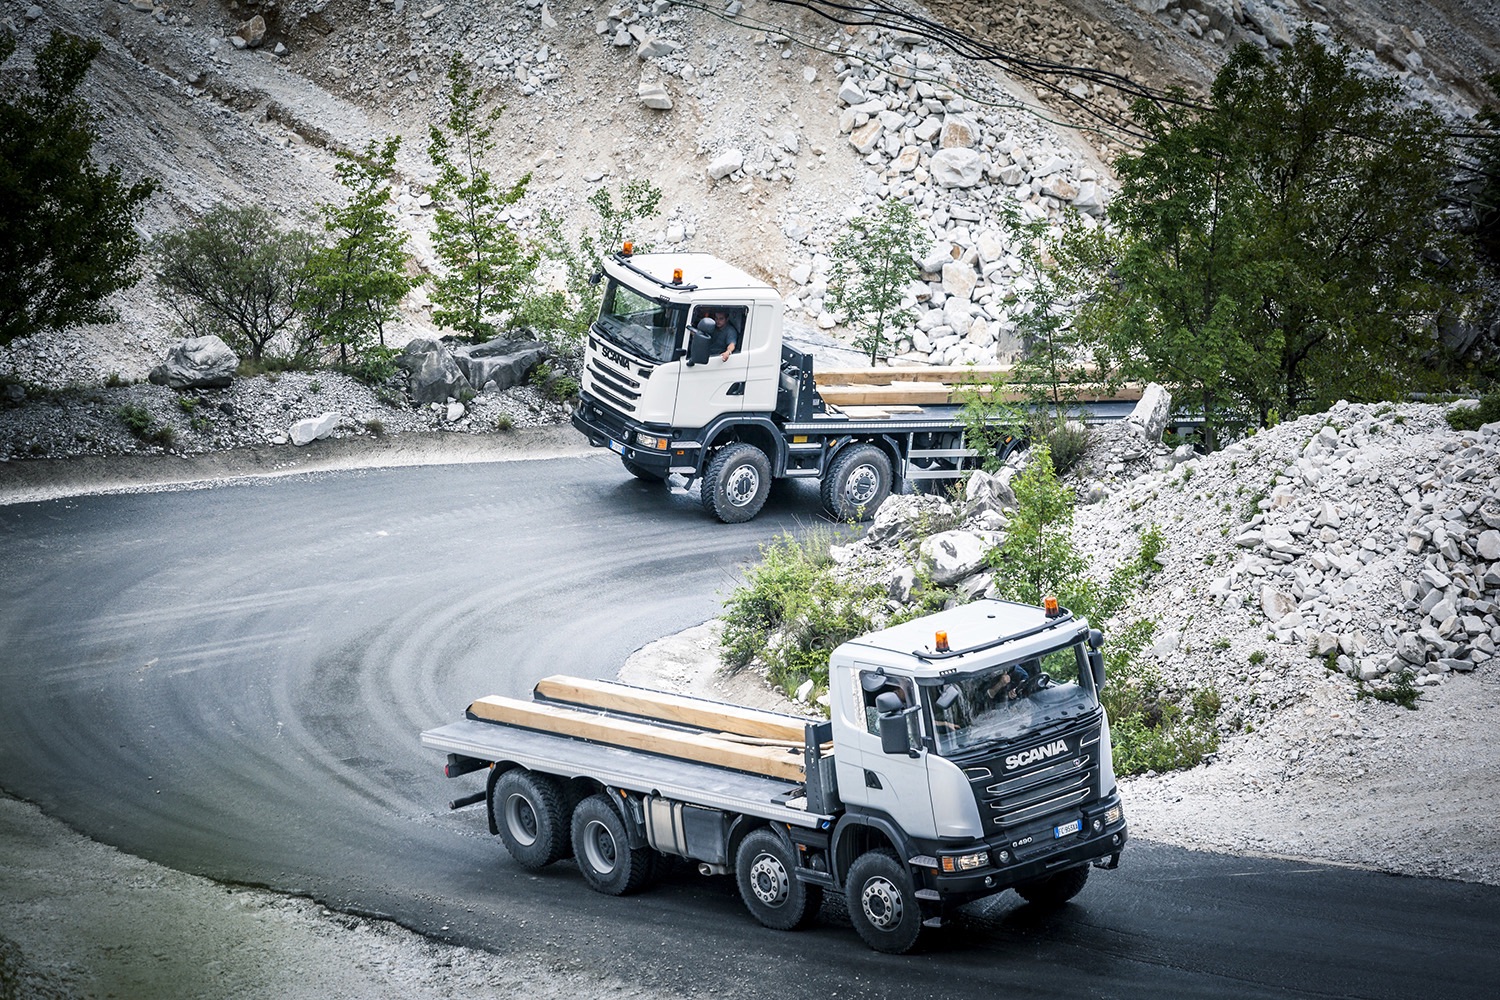 camion allestimento trasporto marmo Gli-scania-fra-il-marmo-di-carrara-perforare-uncategorized-3